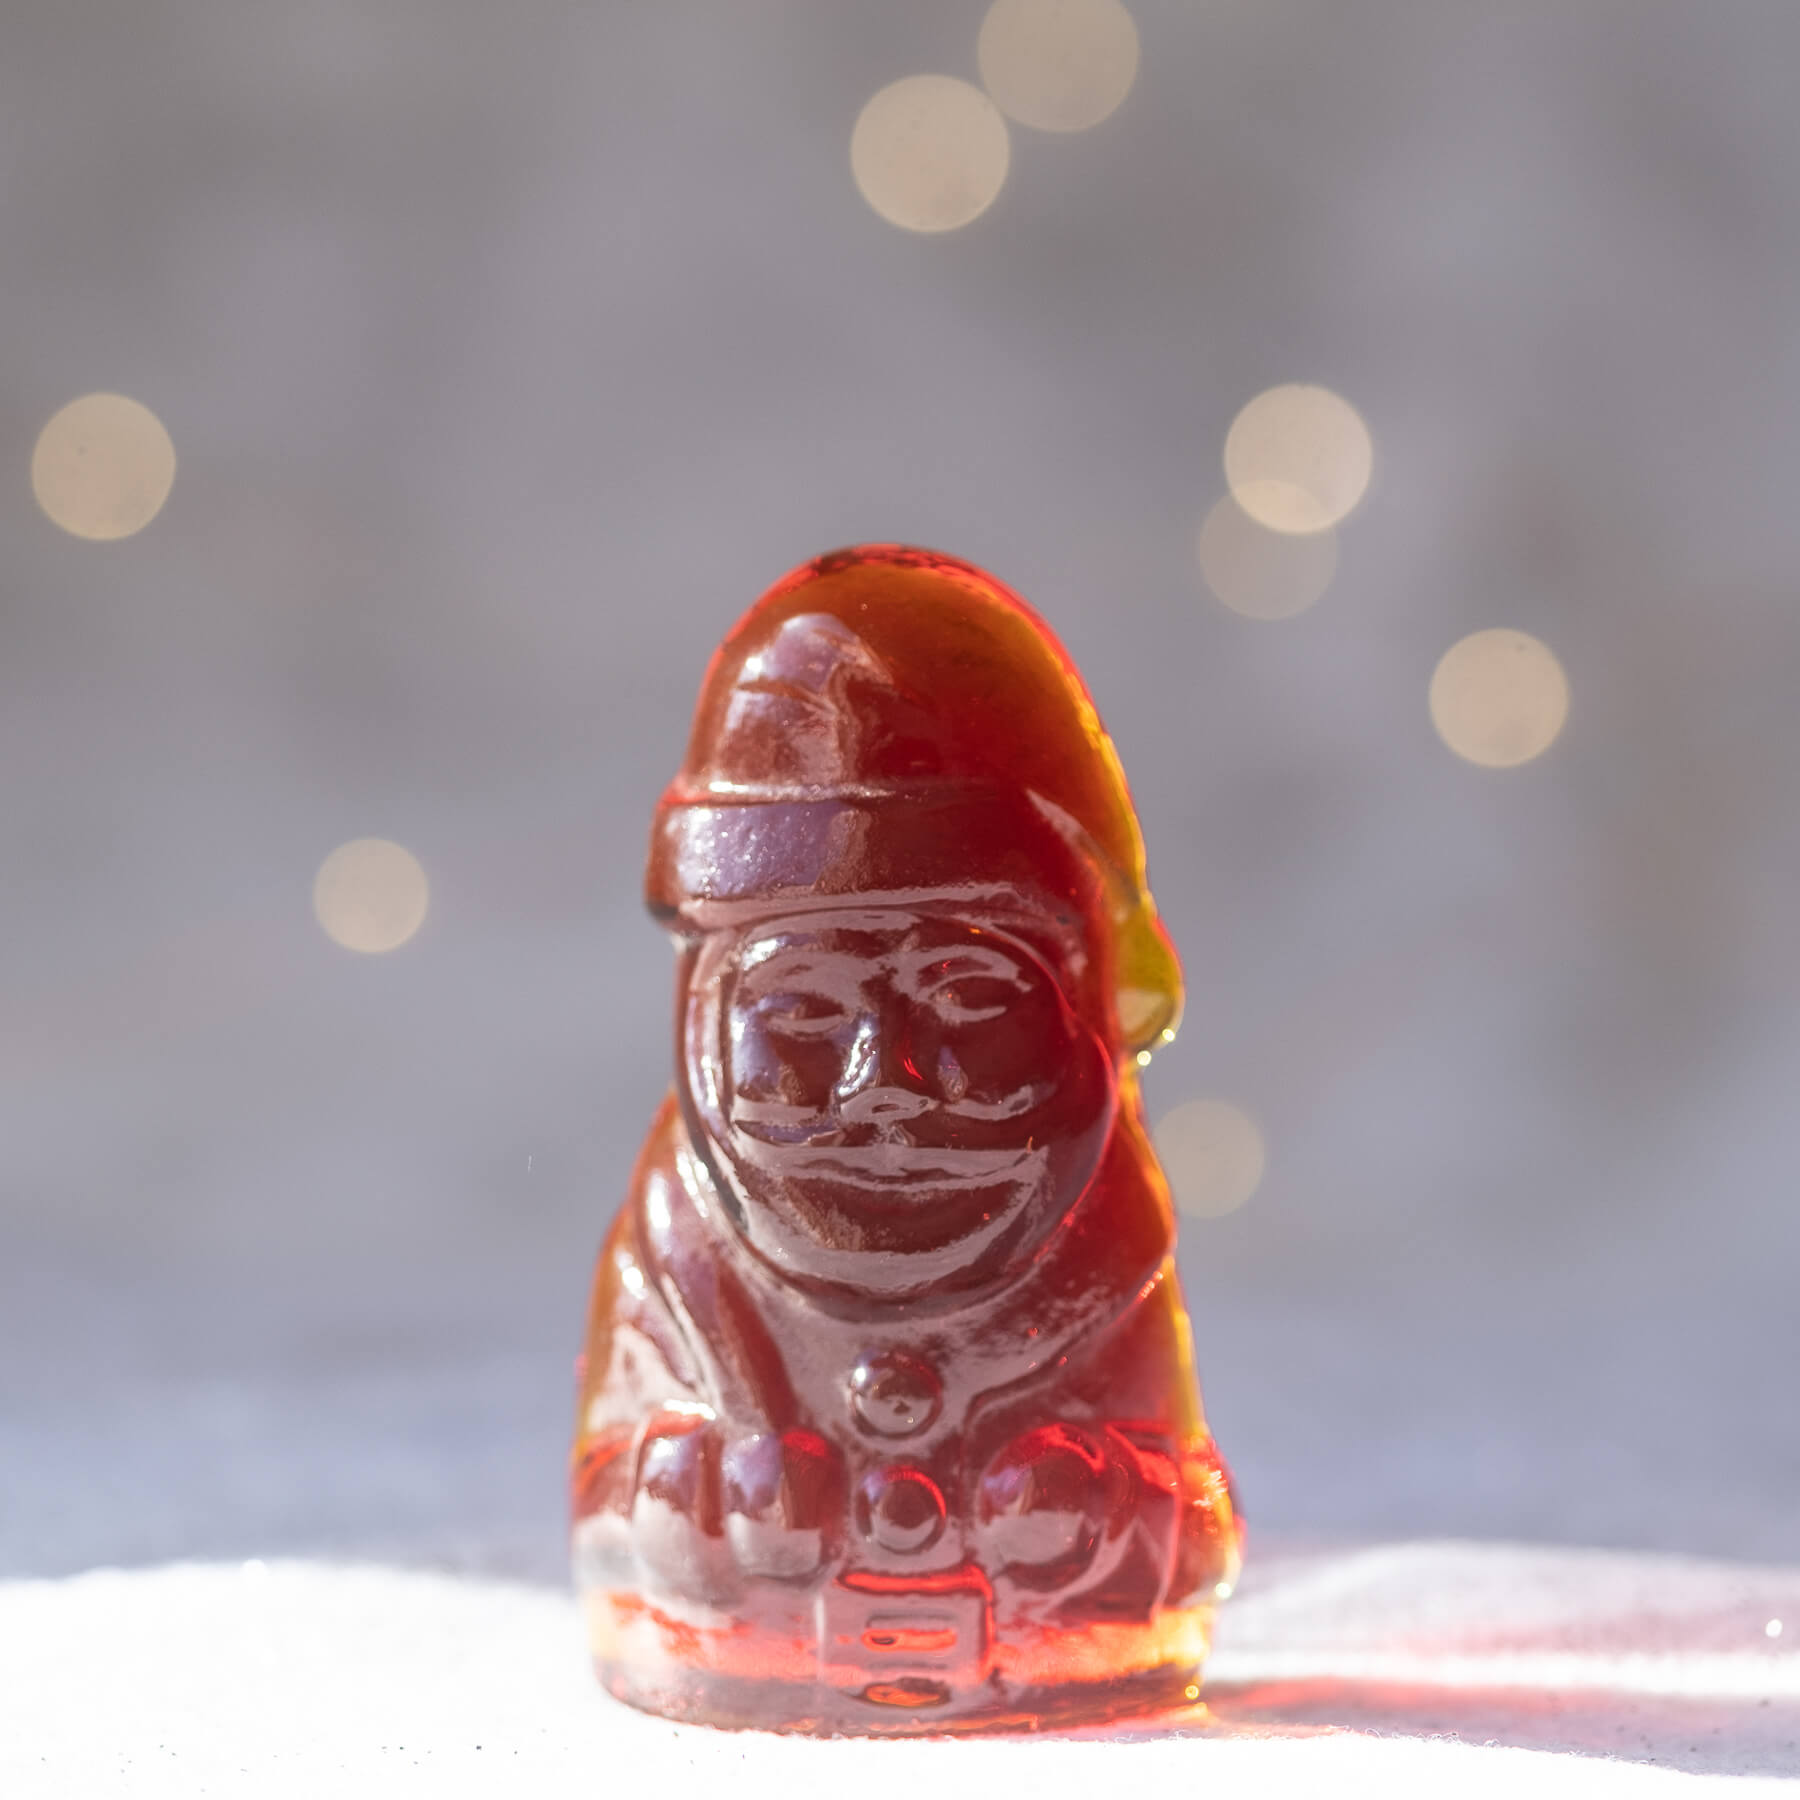 6406 Santa Claus Figural - Tangerine